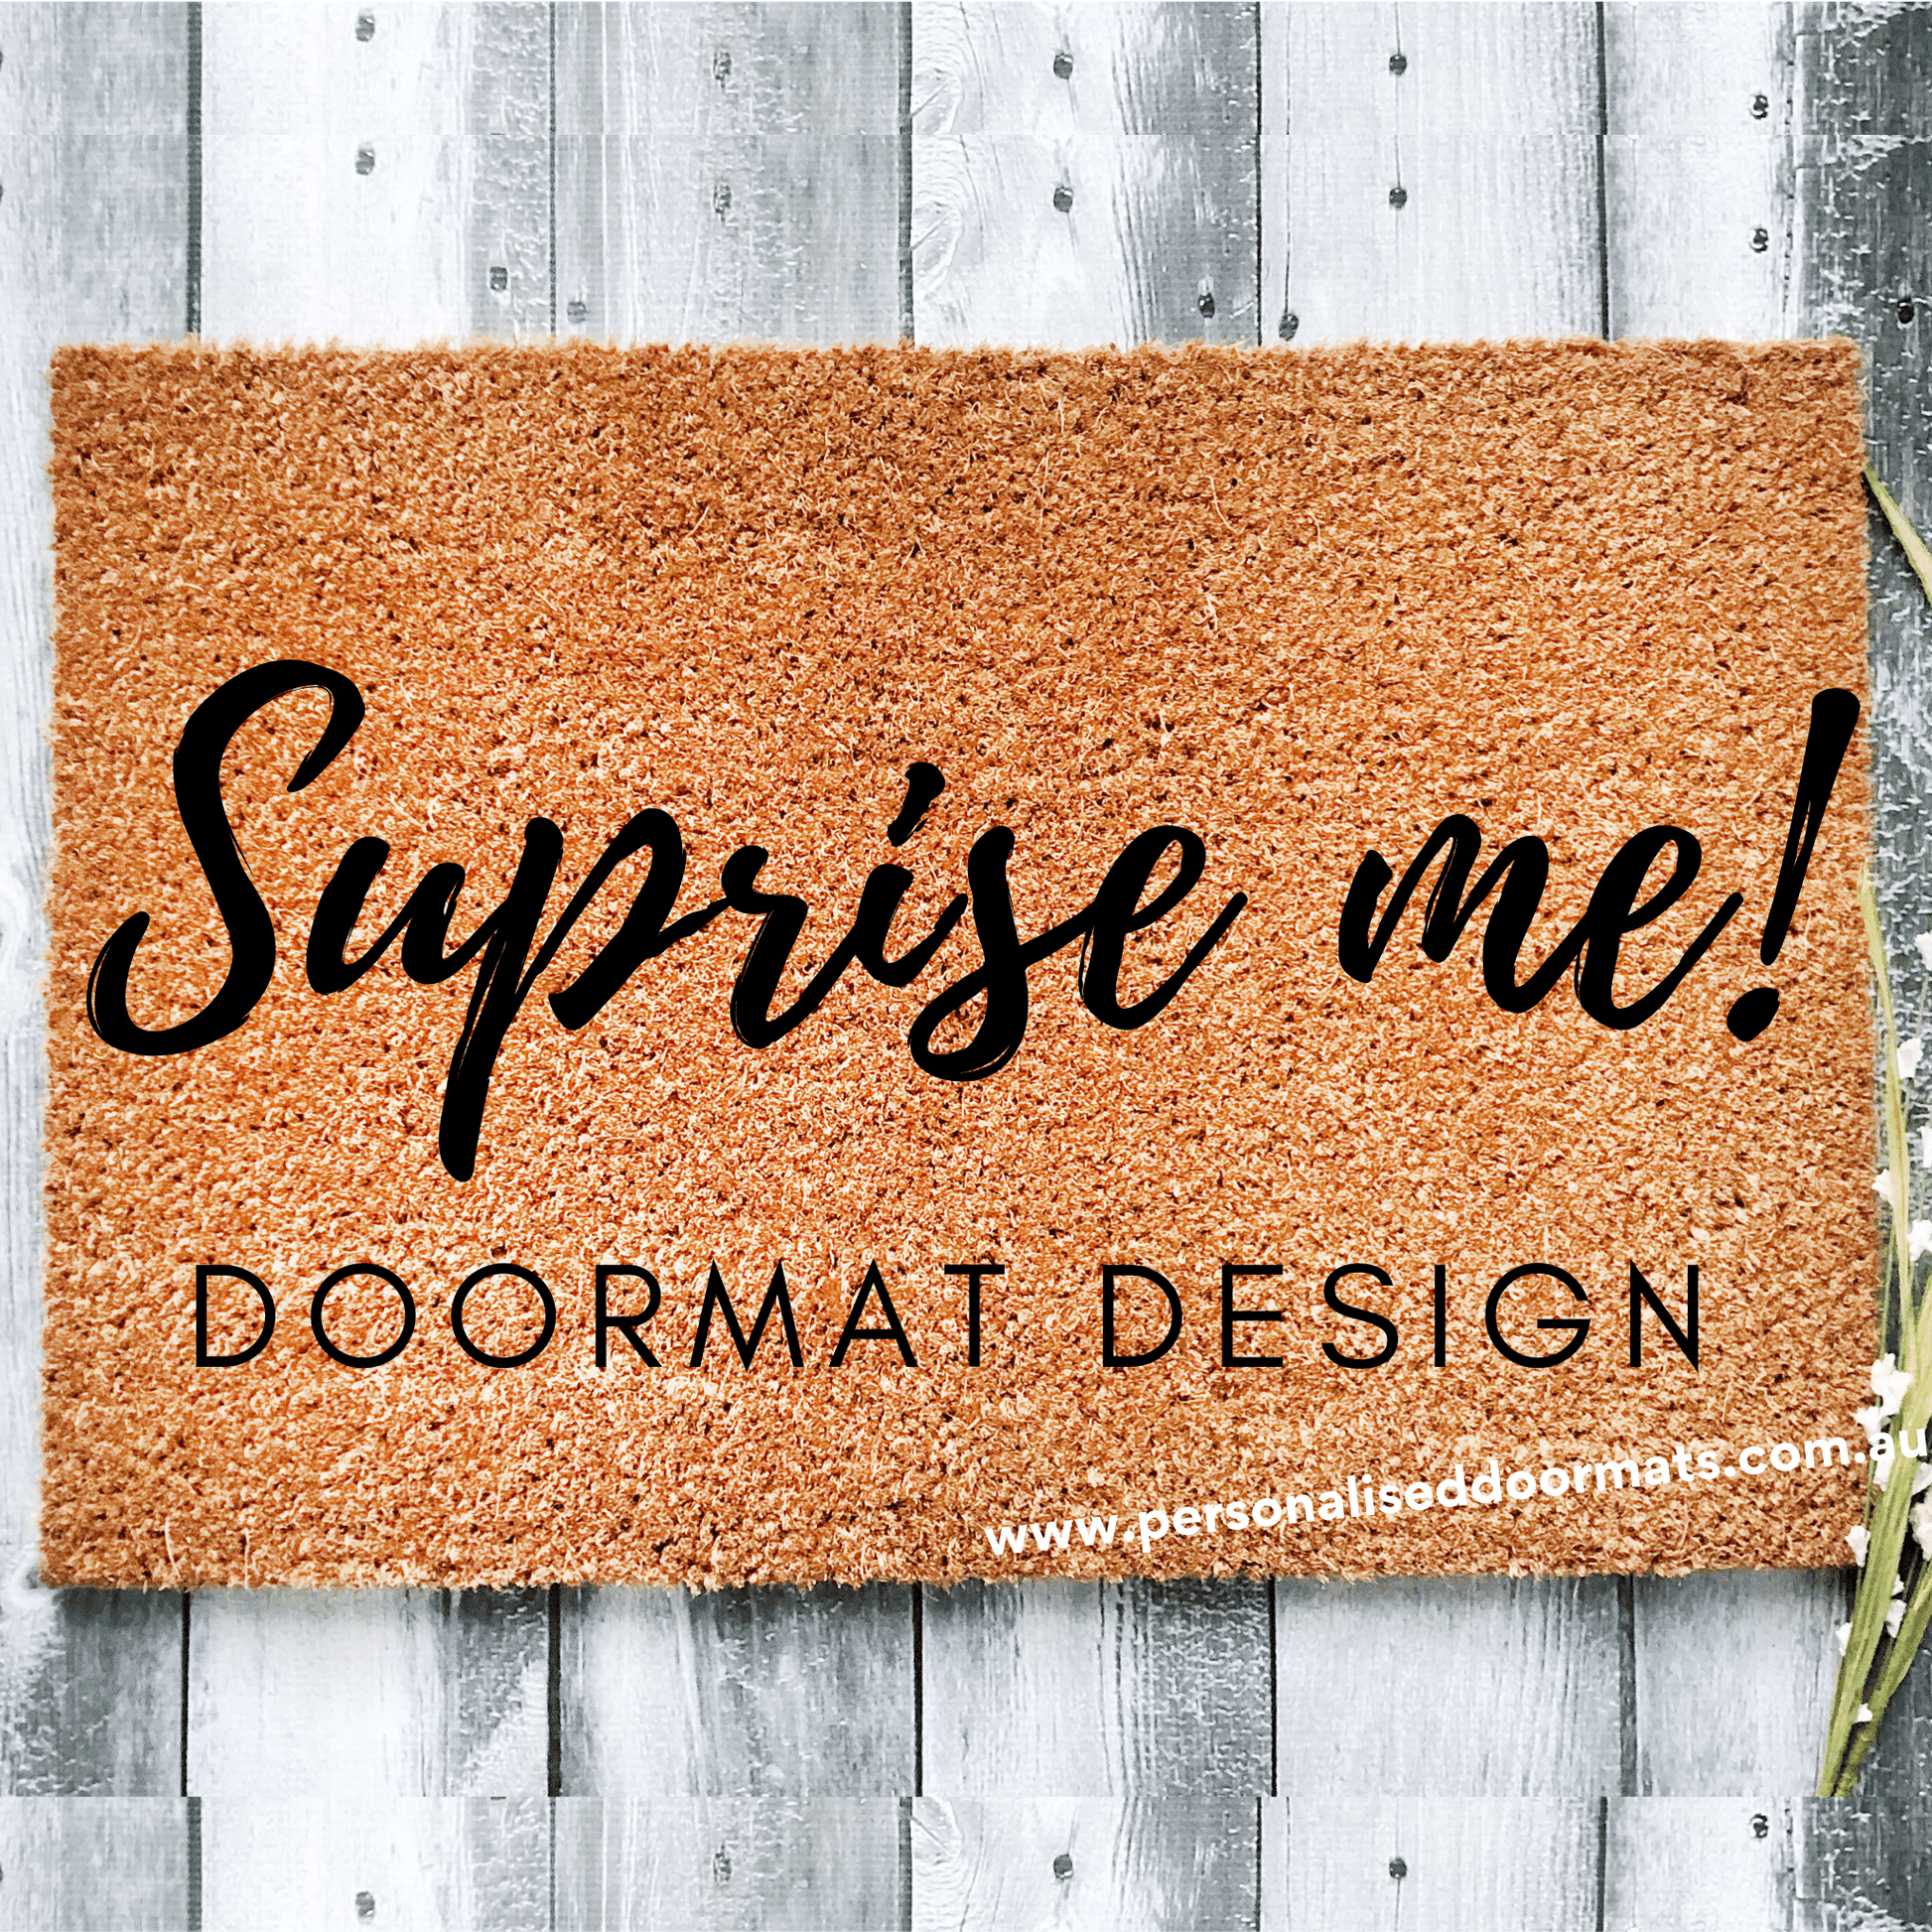 Surprise custom doormat front door design